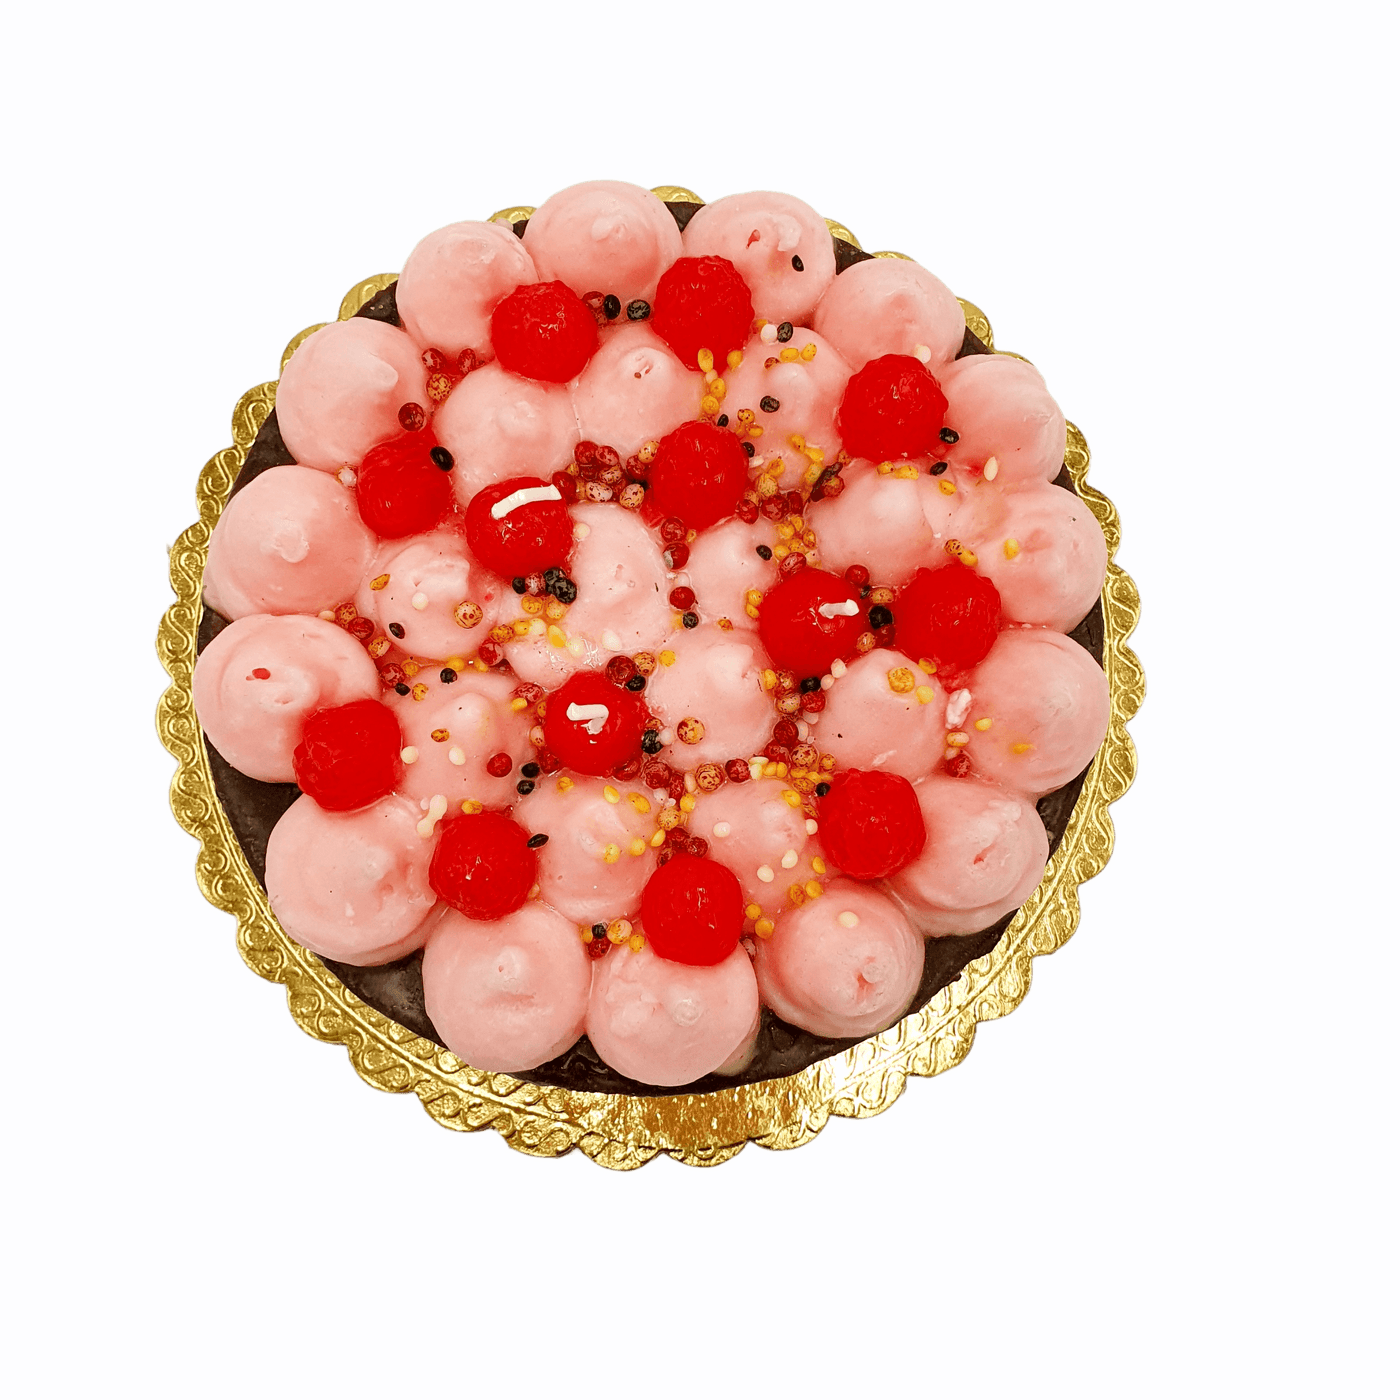 Cereria - Kerze in Form eines Layered Cake mit Schoko | Ø 19 cm - Codeso Living